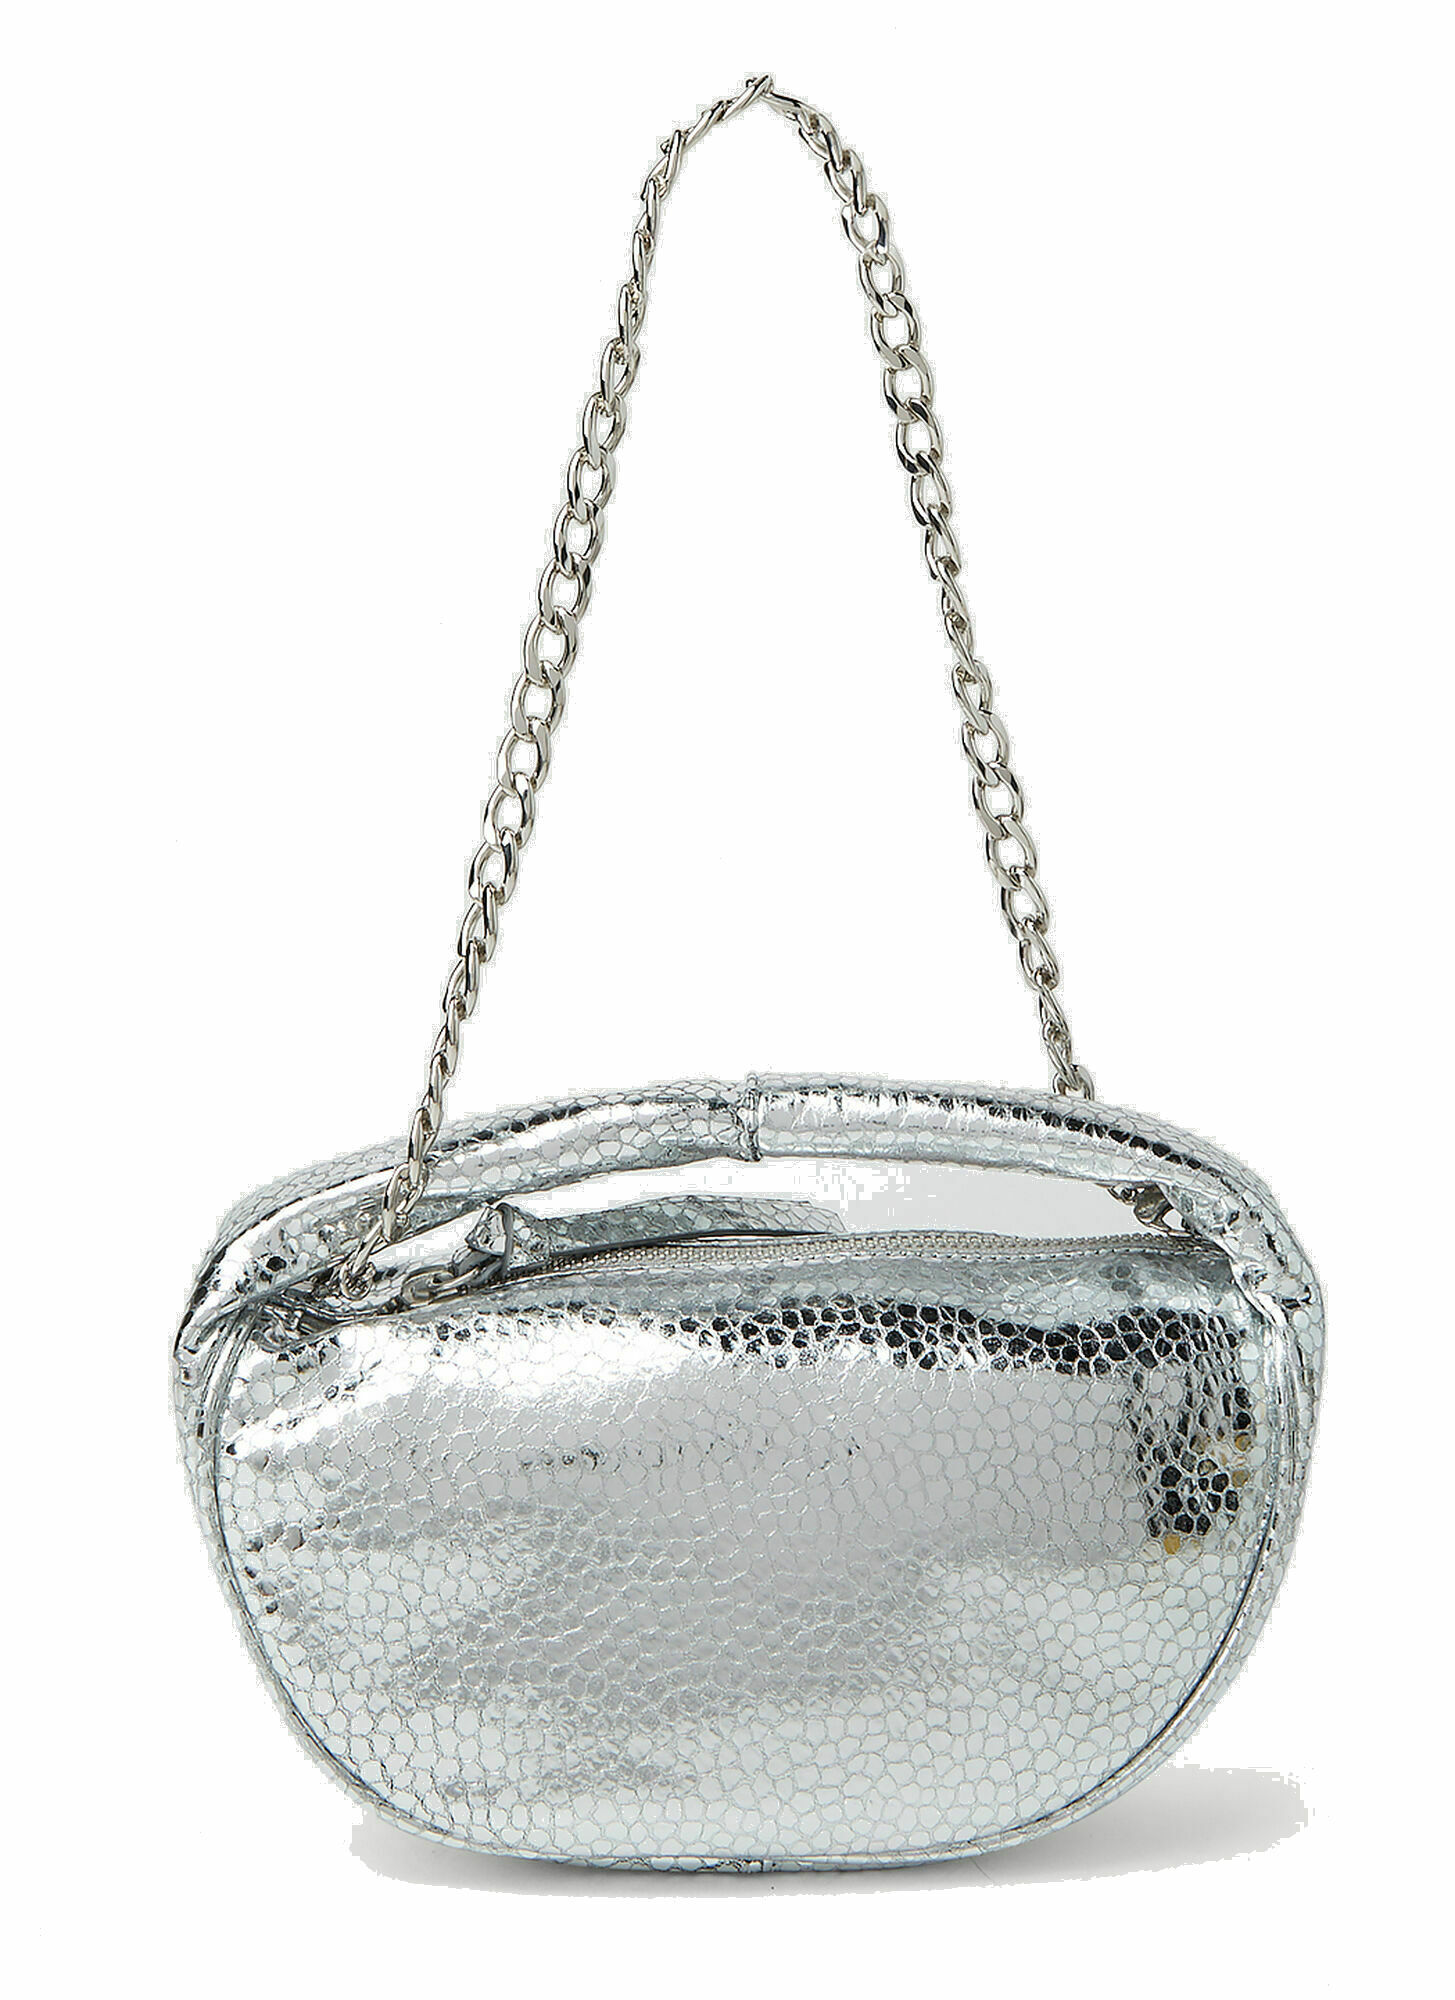 BY FAR - Baby Cush Handbag in Silver By Far